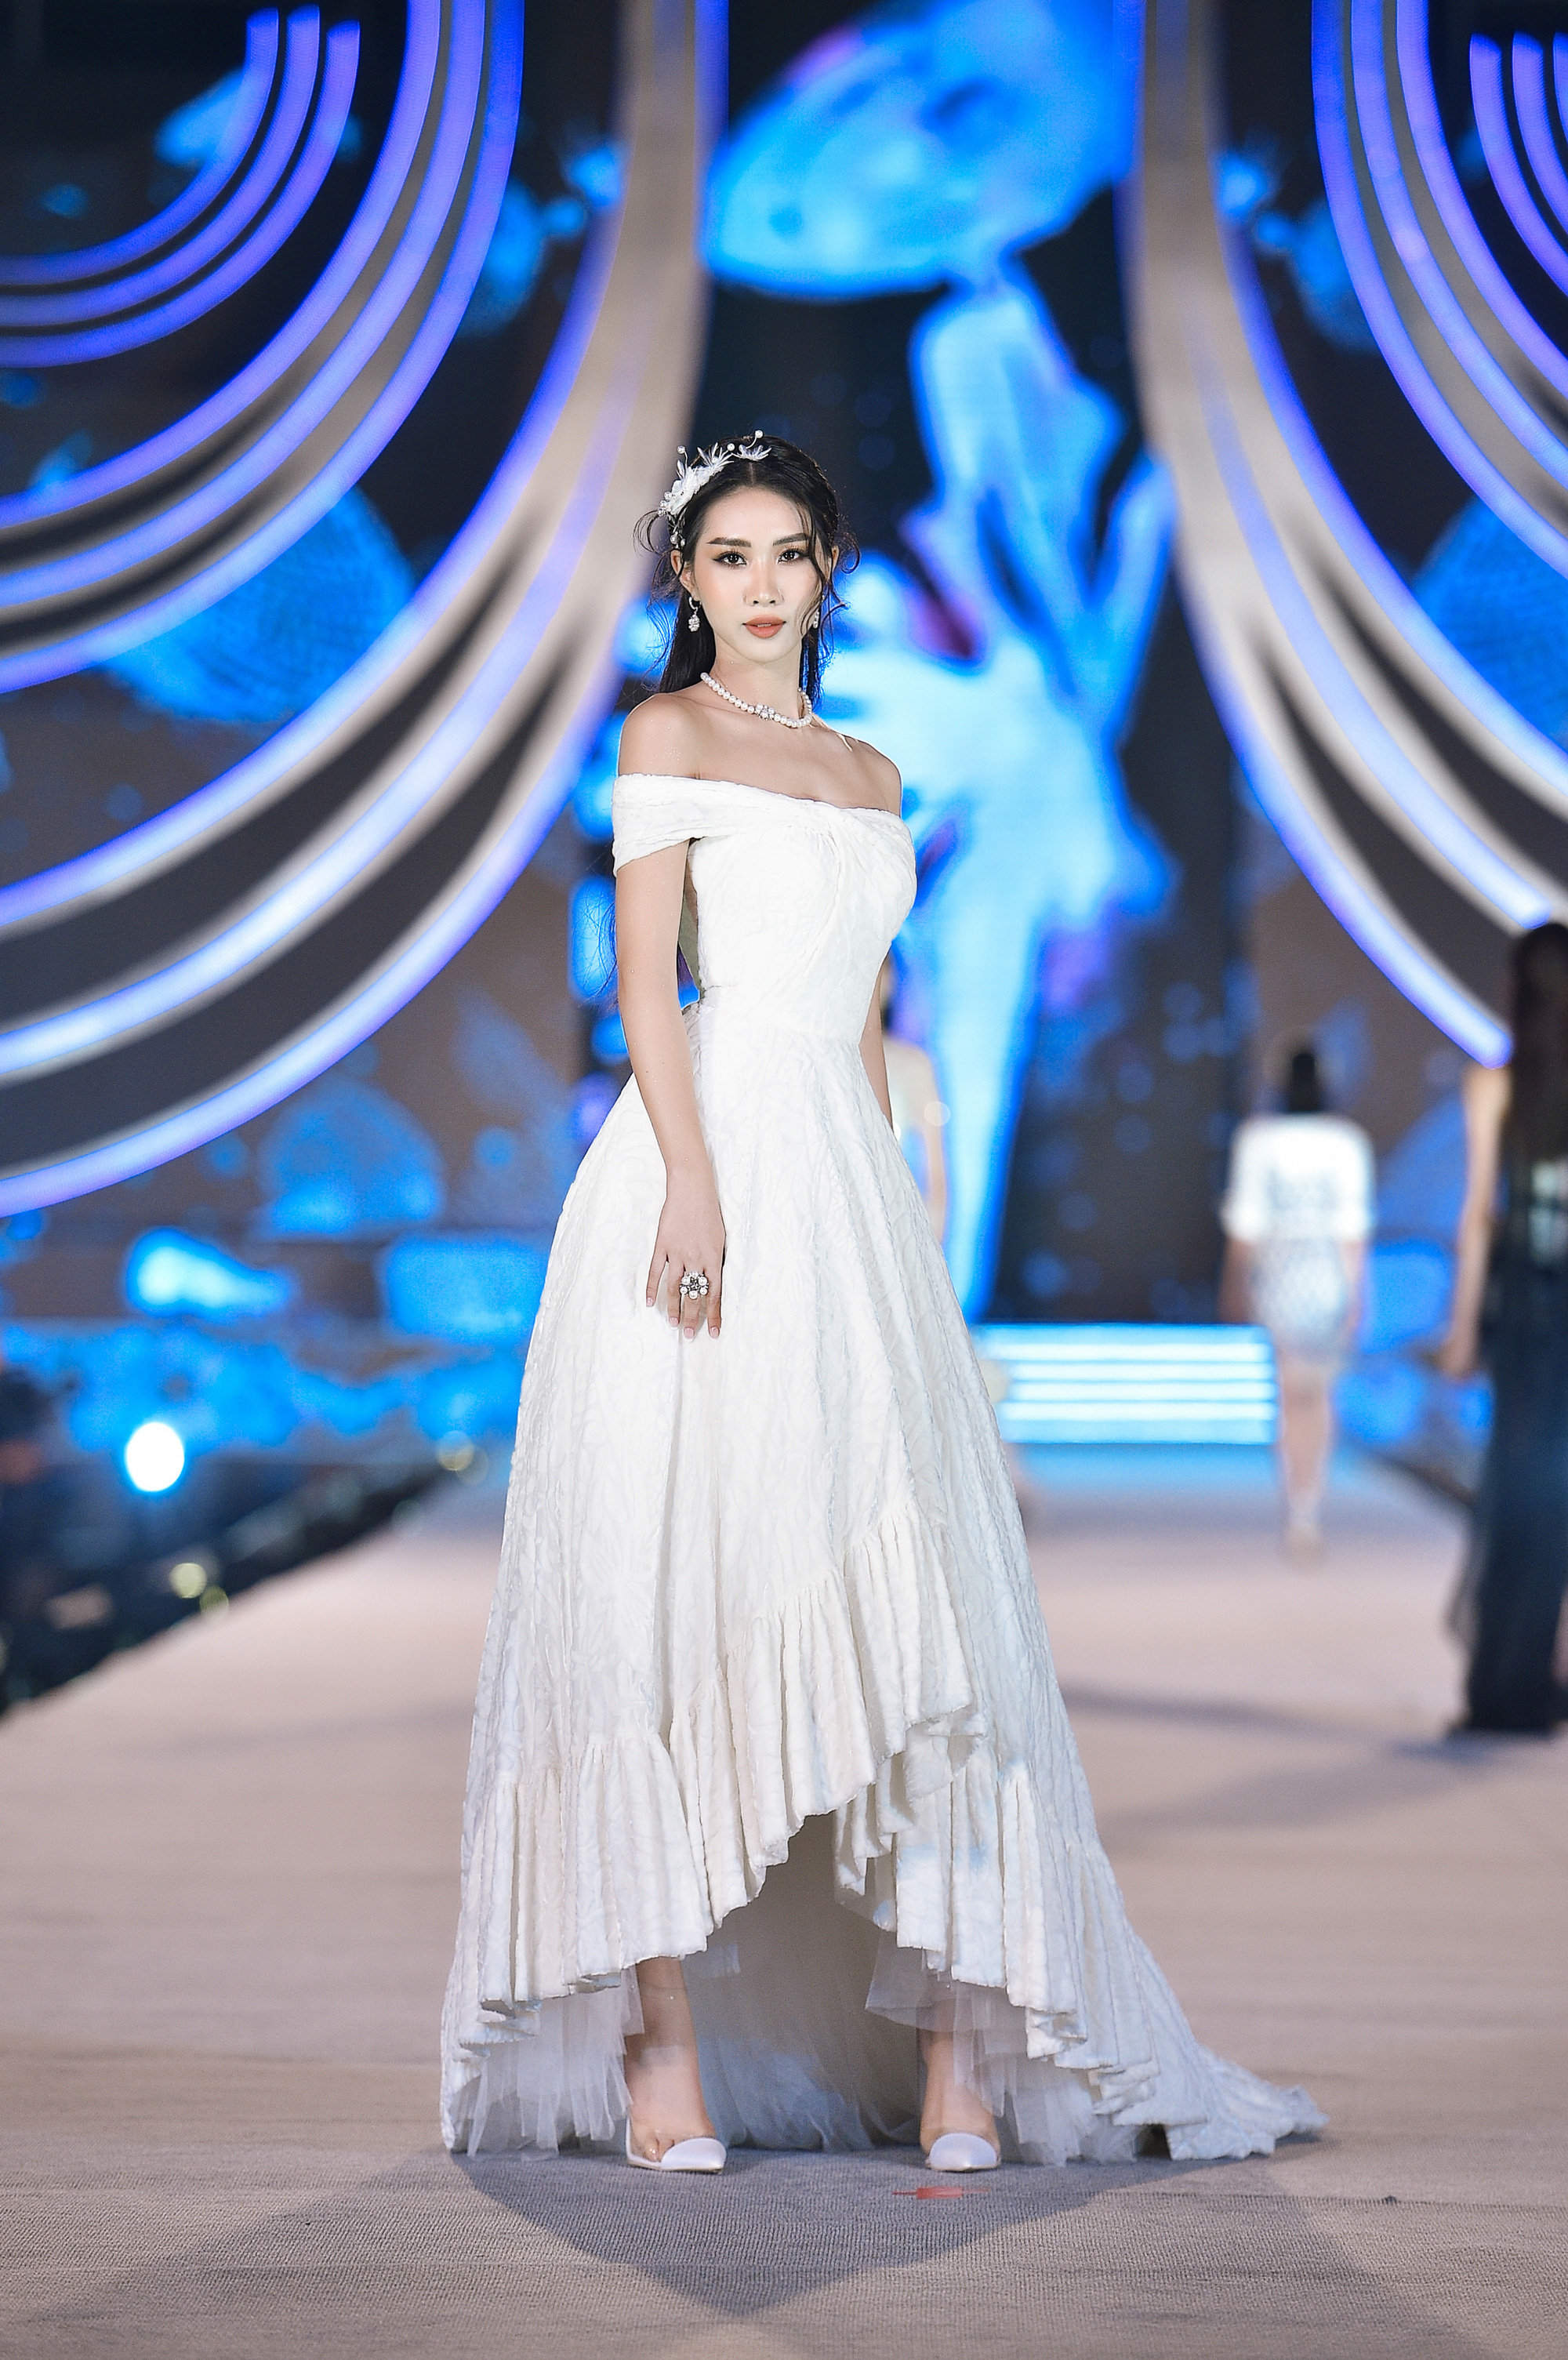 Hoa hậu Việt Nam tỏa sáng trong đêm thi Người đẹp Thời trang - Ảnh 7.